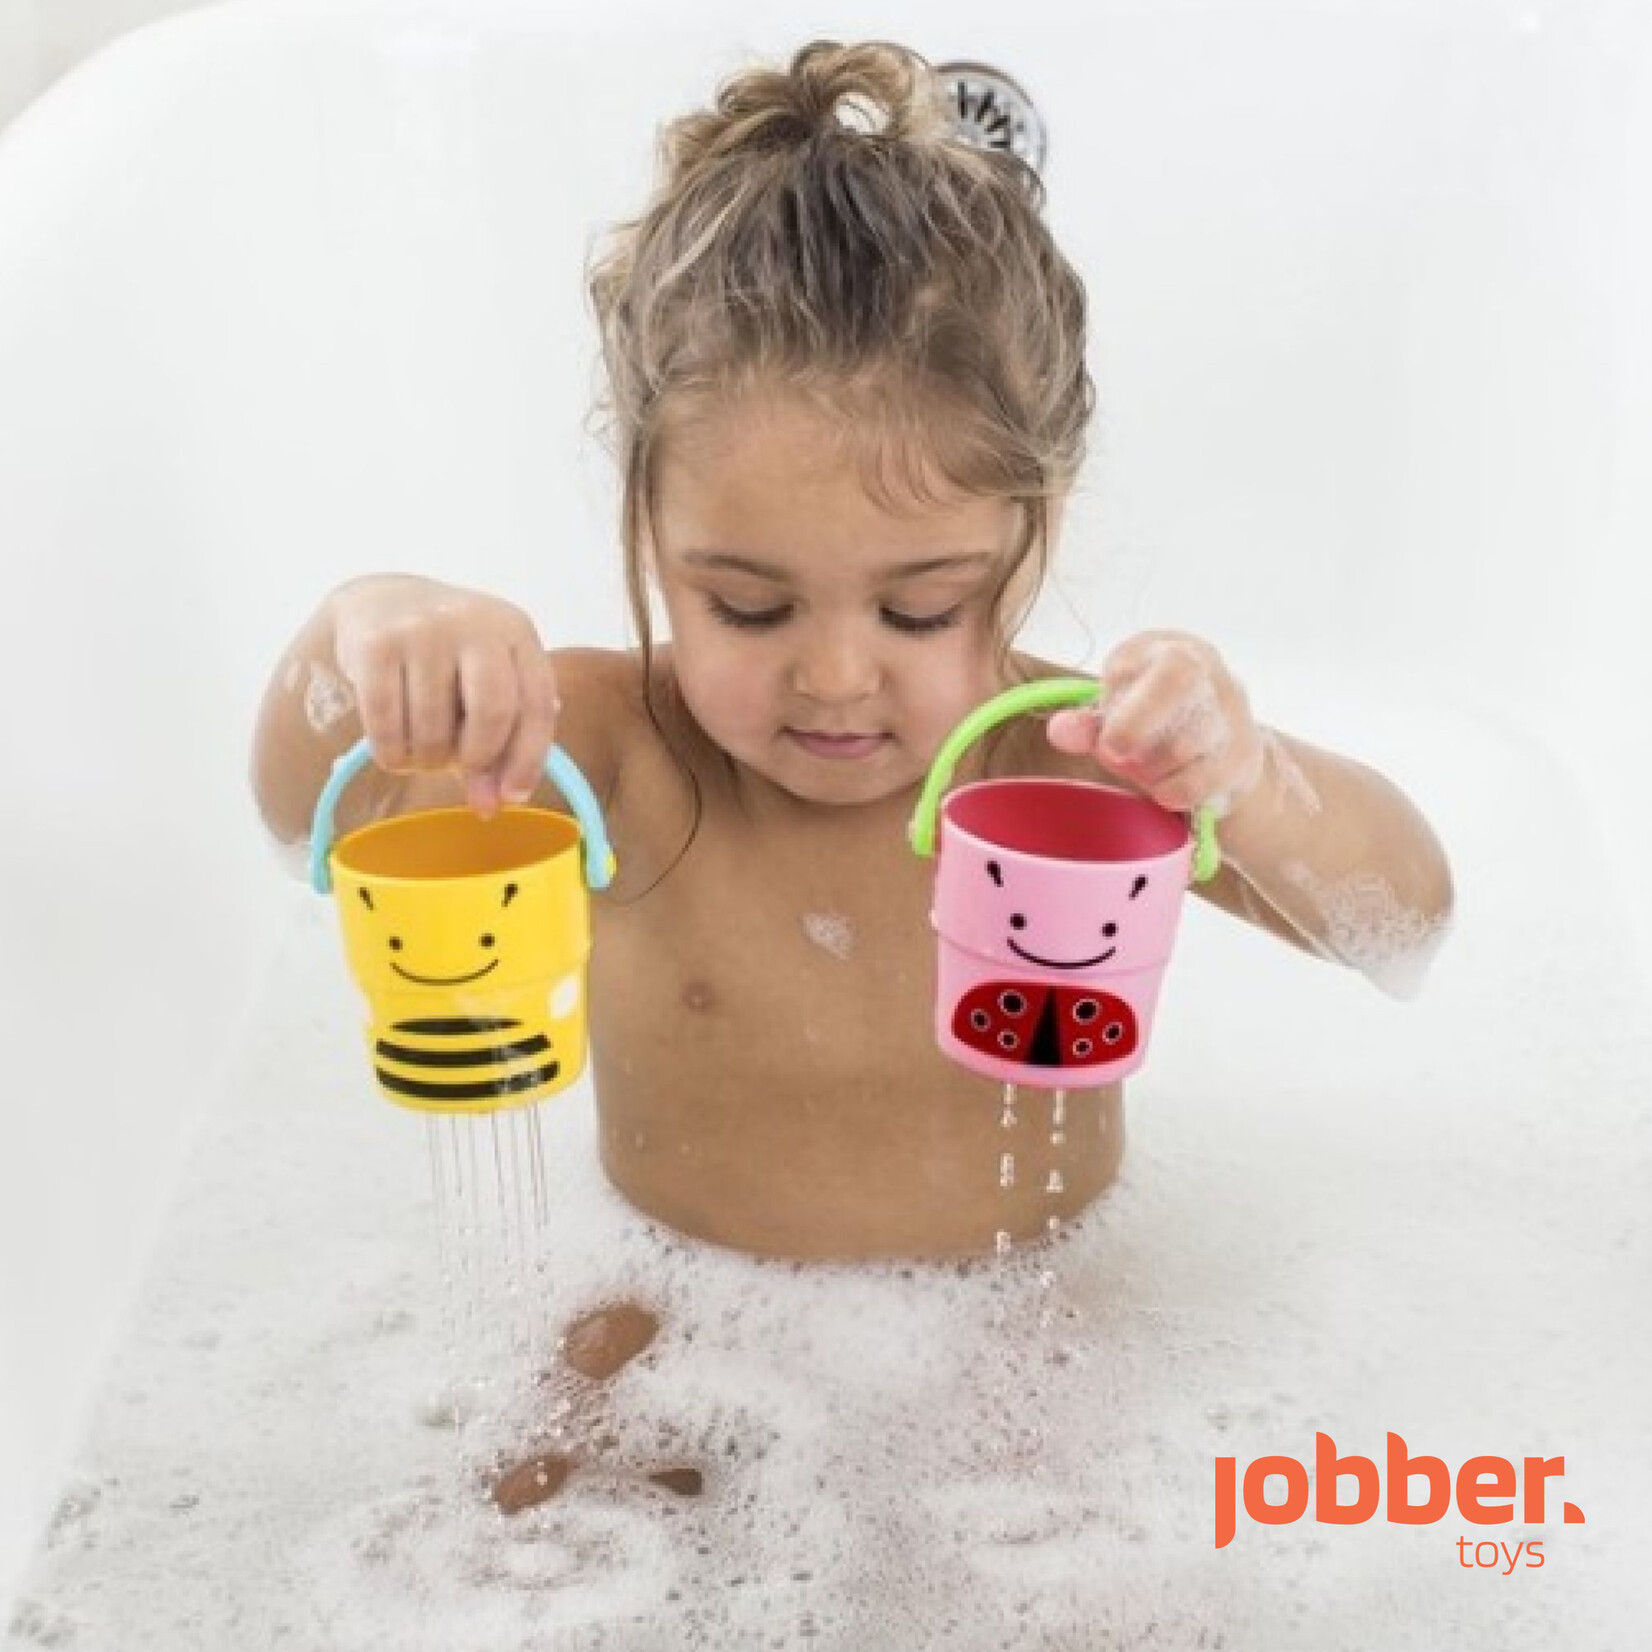 Badspeelgoed - Waterrad bad speelgoed boot + Bademmertjes - Badspeeltjes - 2 stuks